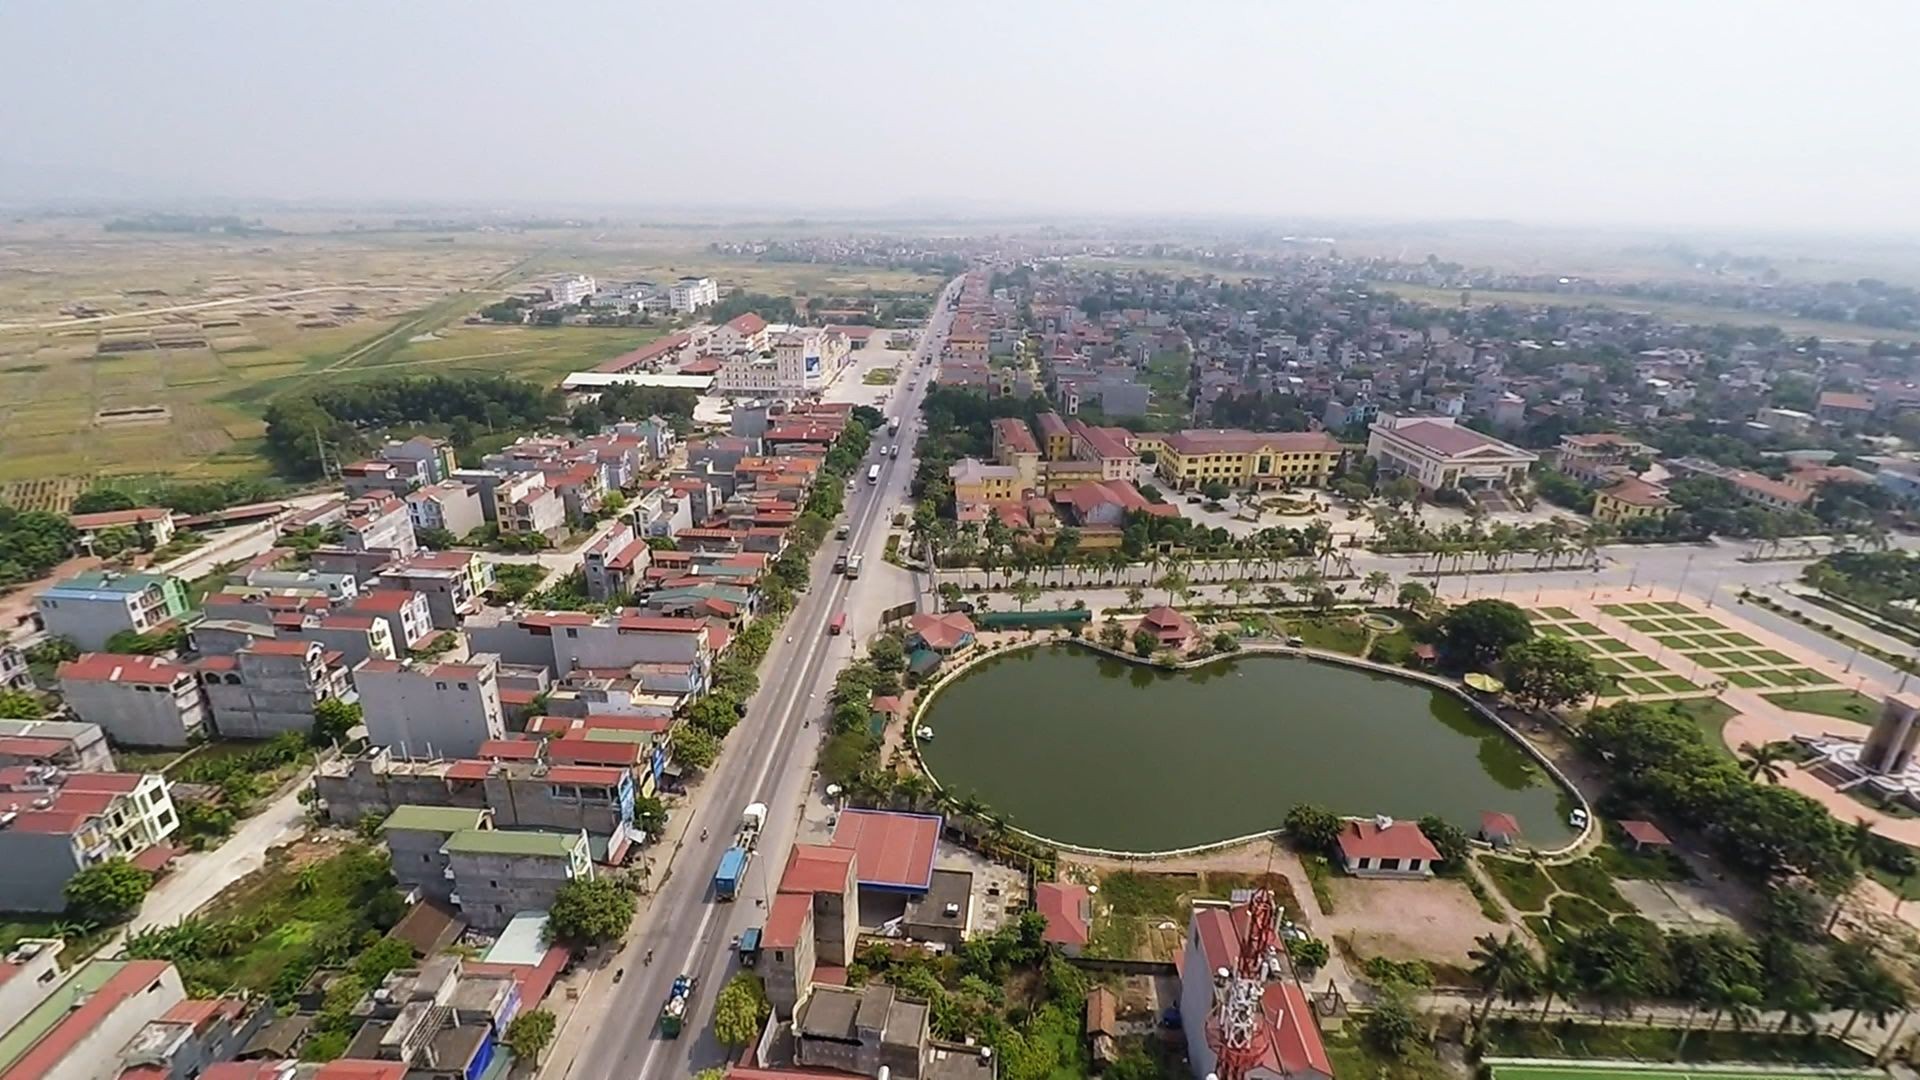 
Quế Võ là khu vực trọng điểm thu hút lượng lớn nguồn vốn đầu tư công nghiệp của Bắc Ninh
